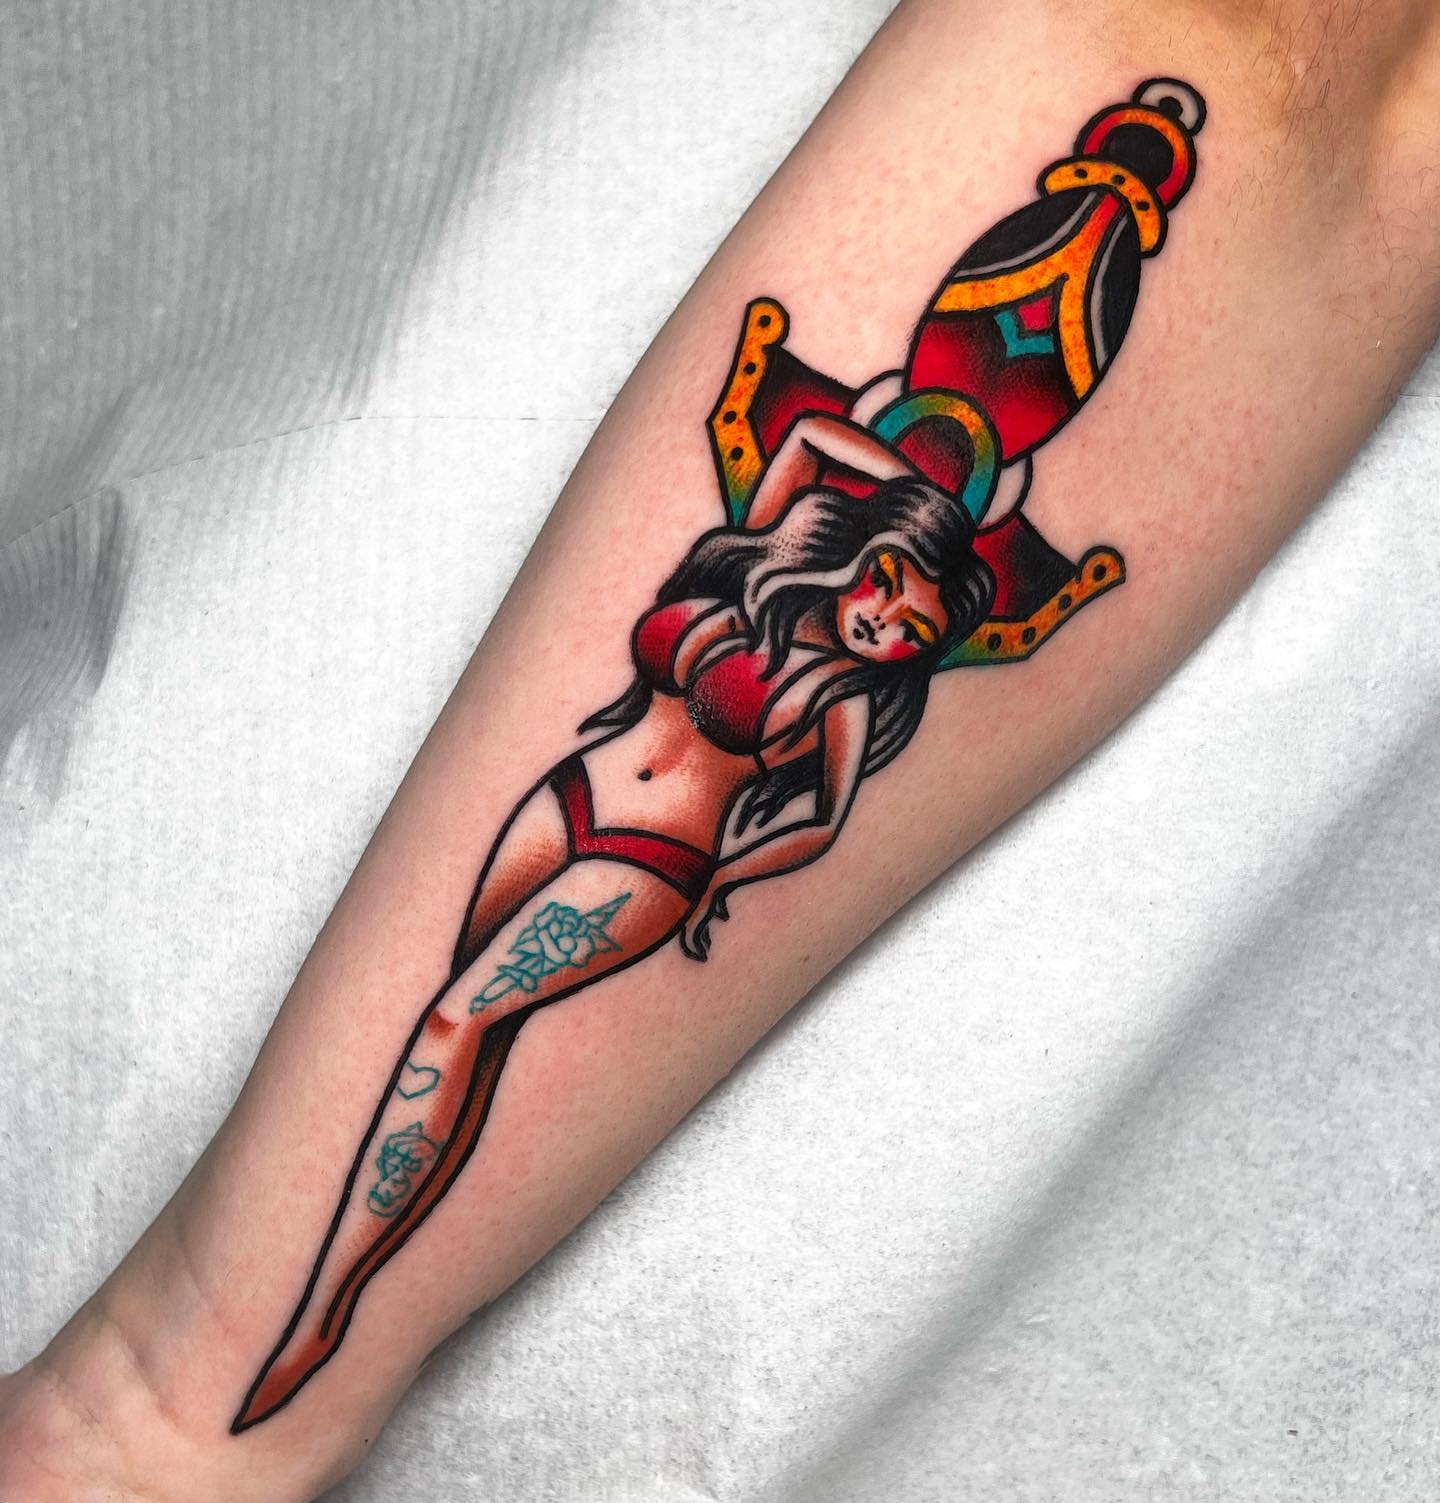 girl with a dagger tattoo 27122019 001 dagger tattoo tattoovaluenet   tattoovaluenet